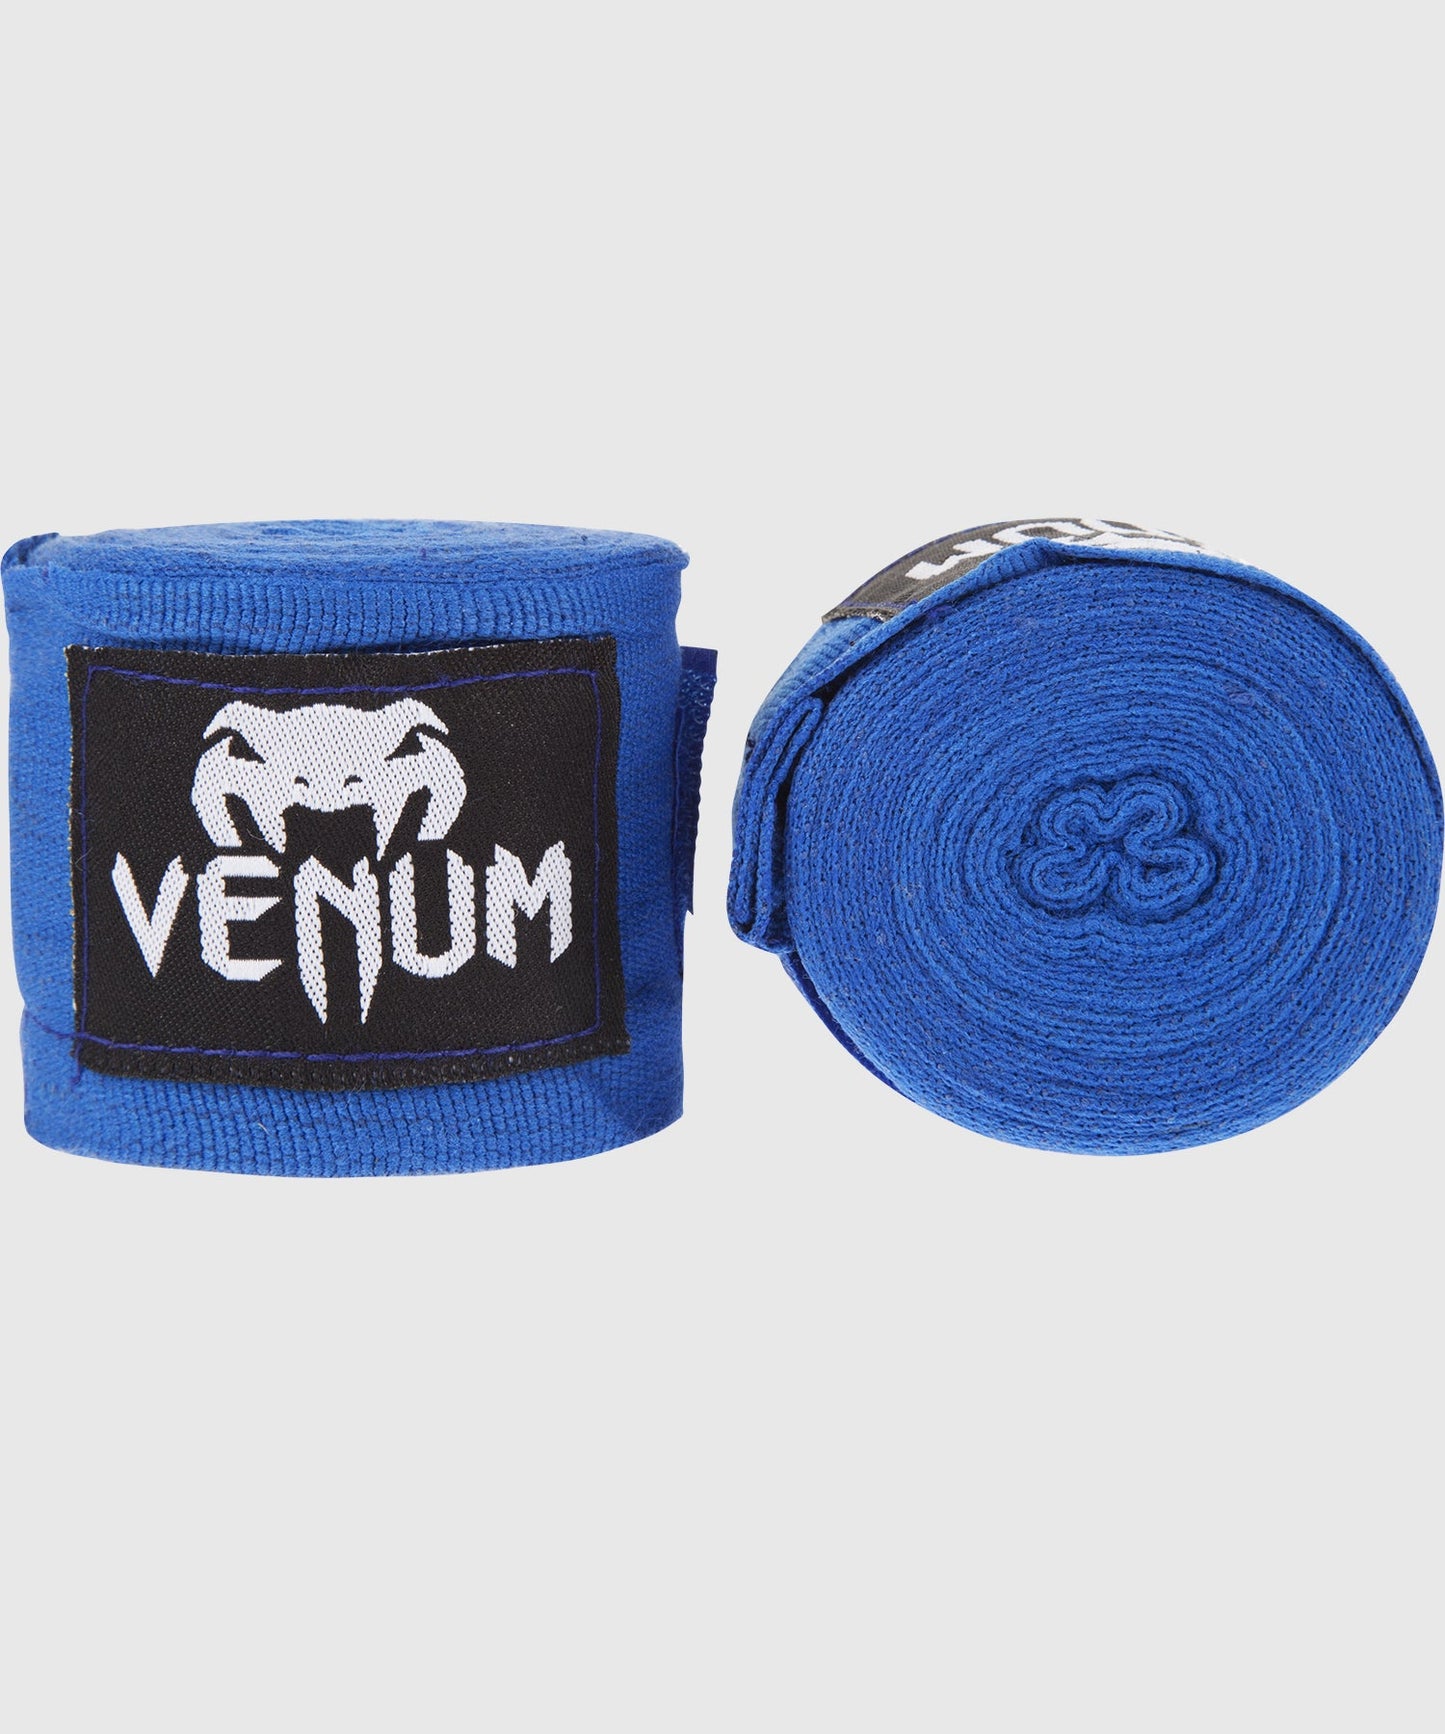 Venum Kontact Boxing Handwraps - 4.5m - Blue